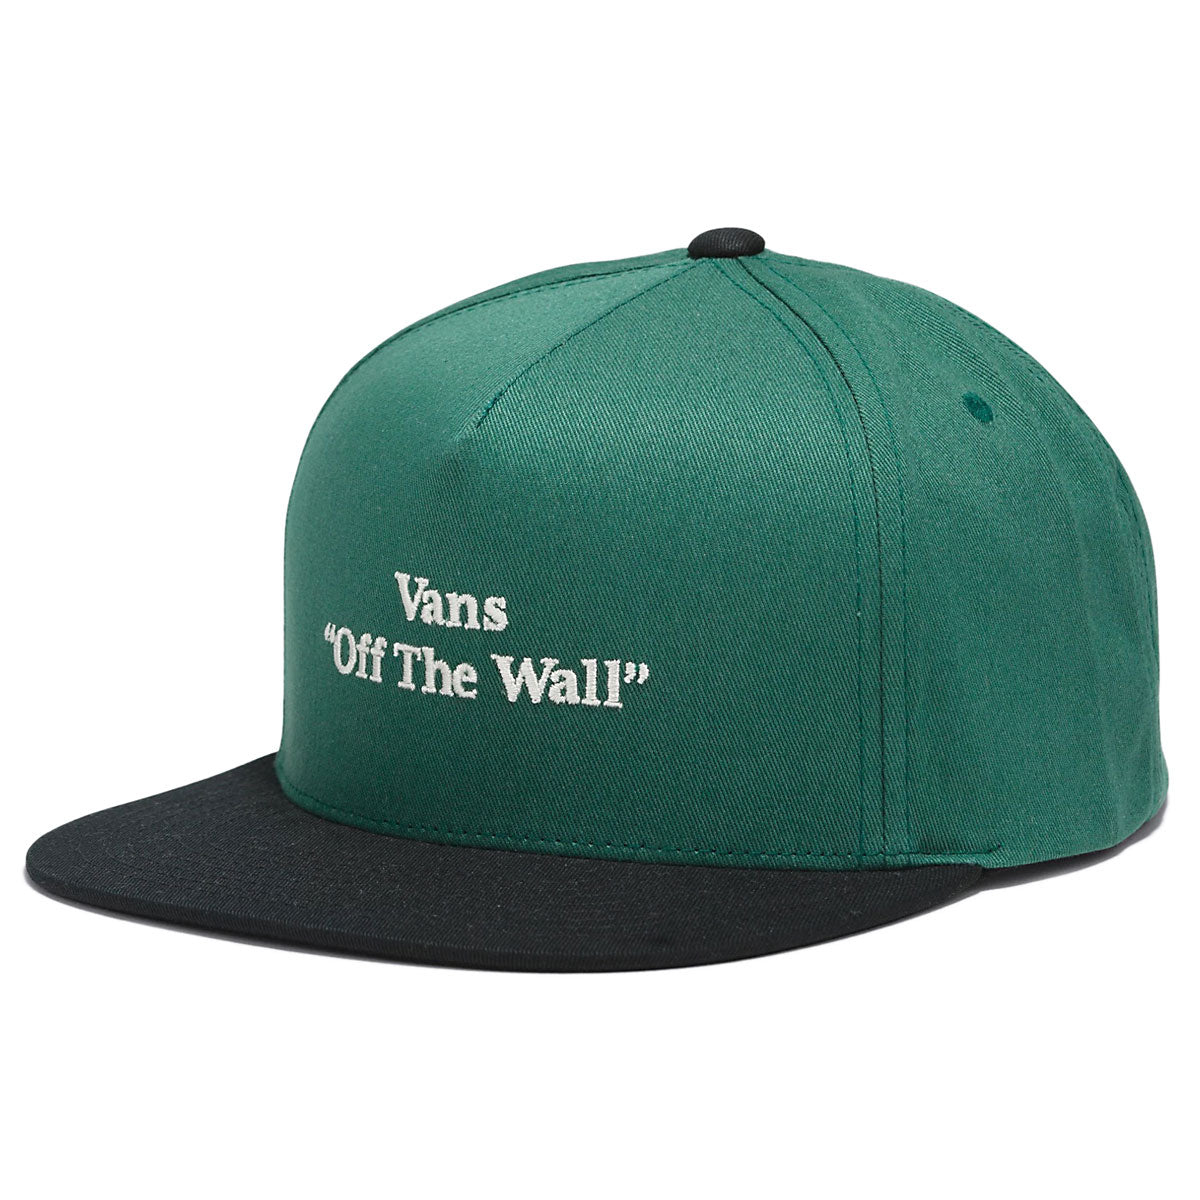 Vans Quoted Snapback Hat - Bistro Green image 1